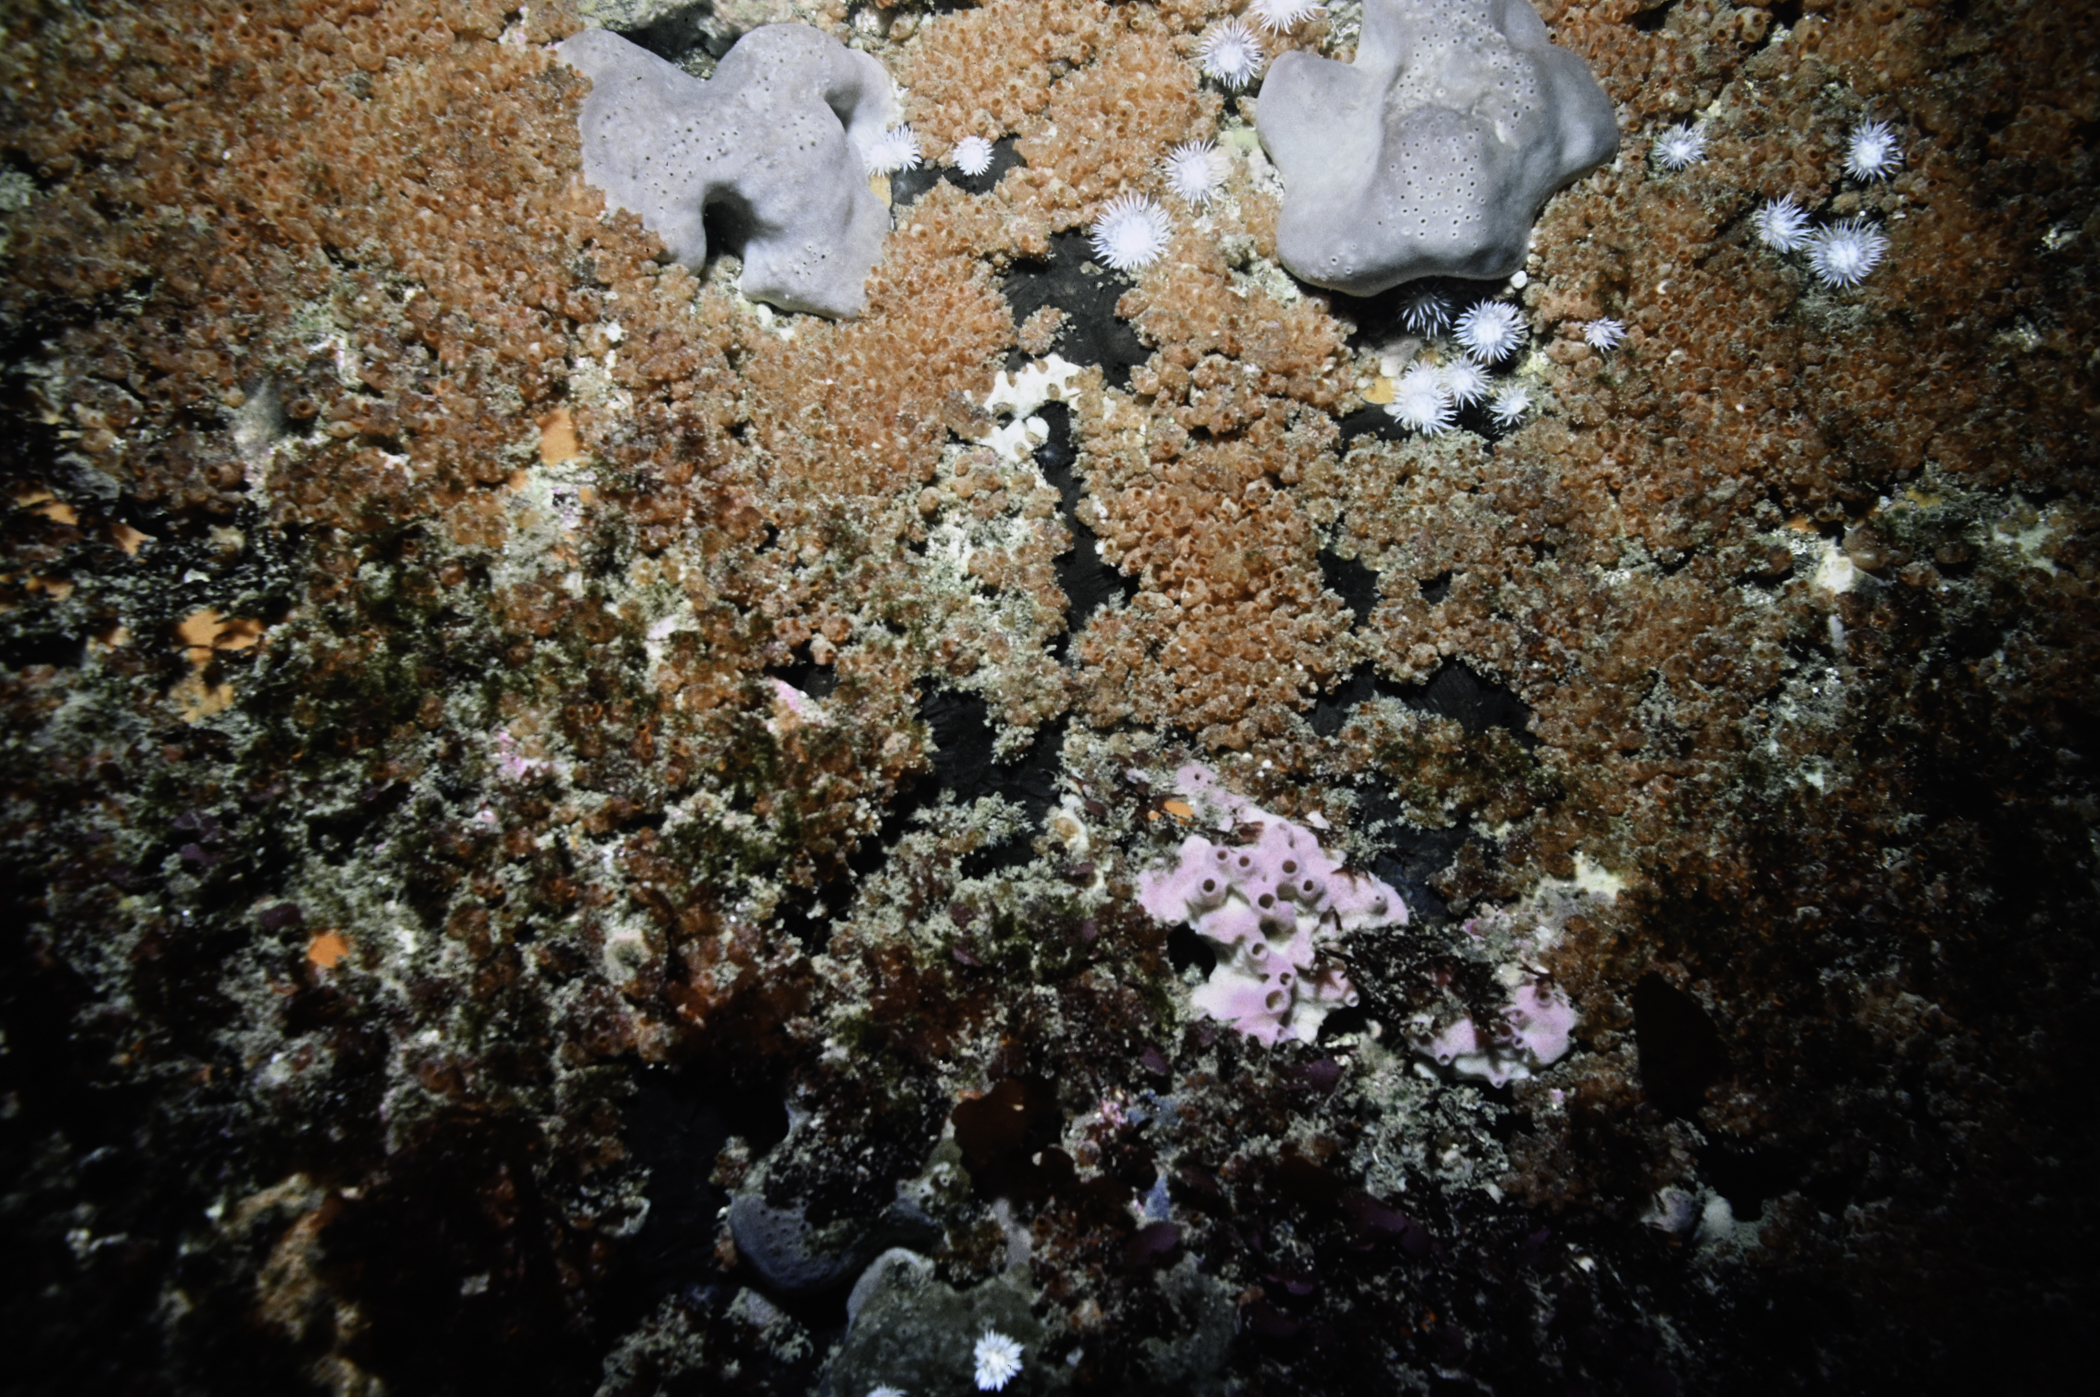 Pachymatisma johnstonia, Dendrodoa grossularia. Site: W of Farganlack Point, Rathlin Island. 